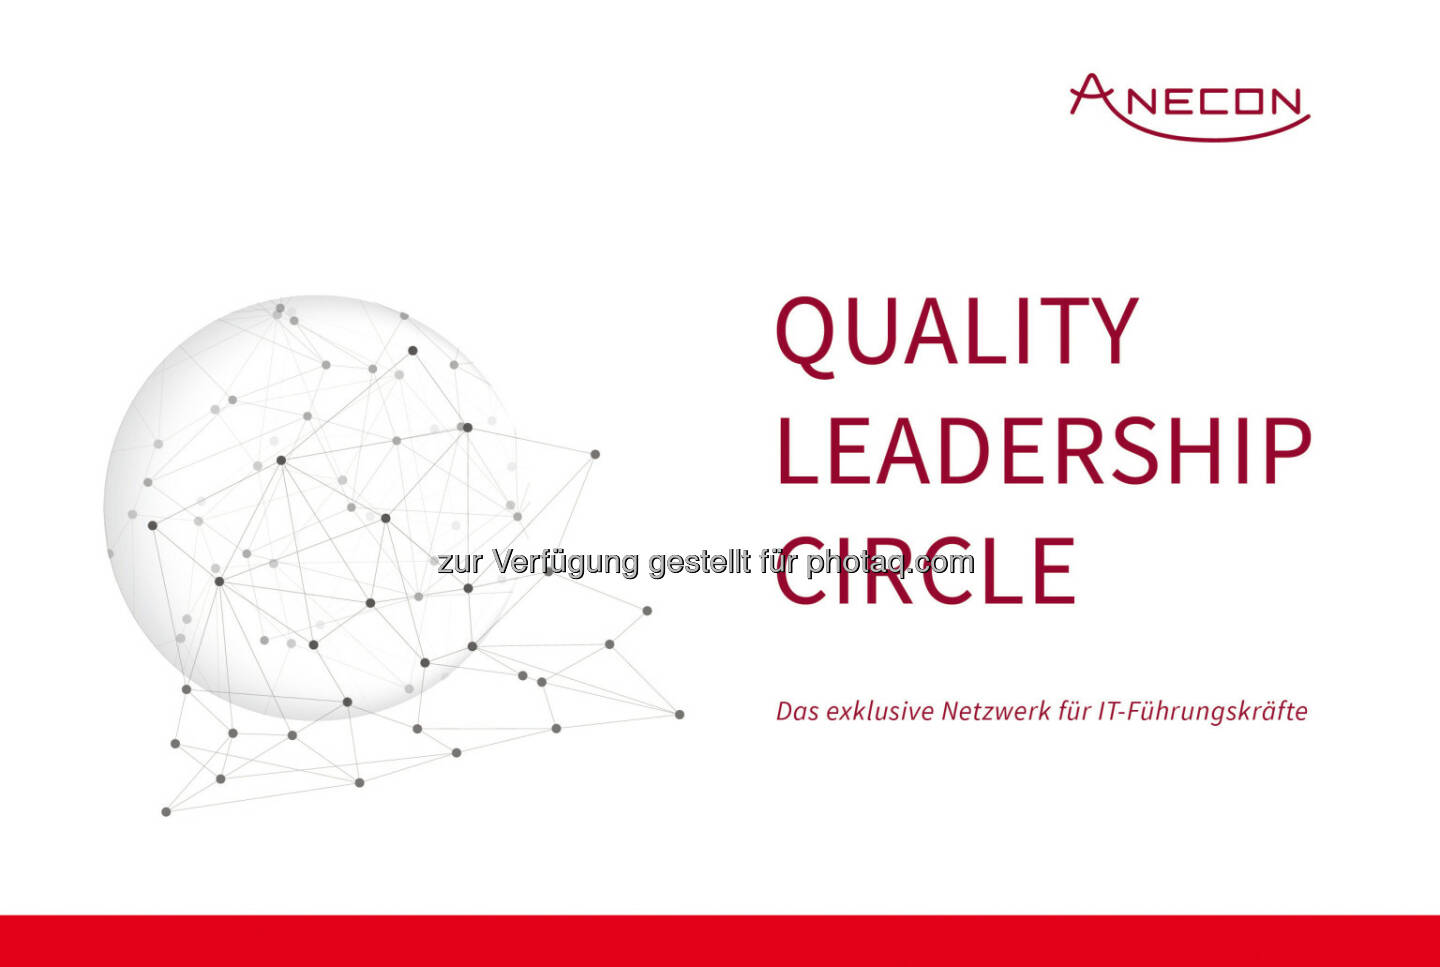 „Quality Leadership Circle“ : Smarte Zusammenkunft heimischer IT-Führungskräfte : Anecon bietet mit dem Quality Leadership Circle ein Netzwerk, in dem sich CIOs und Quality Leader aus der Wirtschaft zu Themen rund um Software-Qualität und -Produktivität austauschen : Fotocredit: Anecon